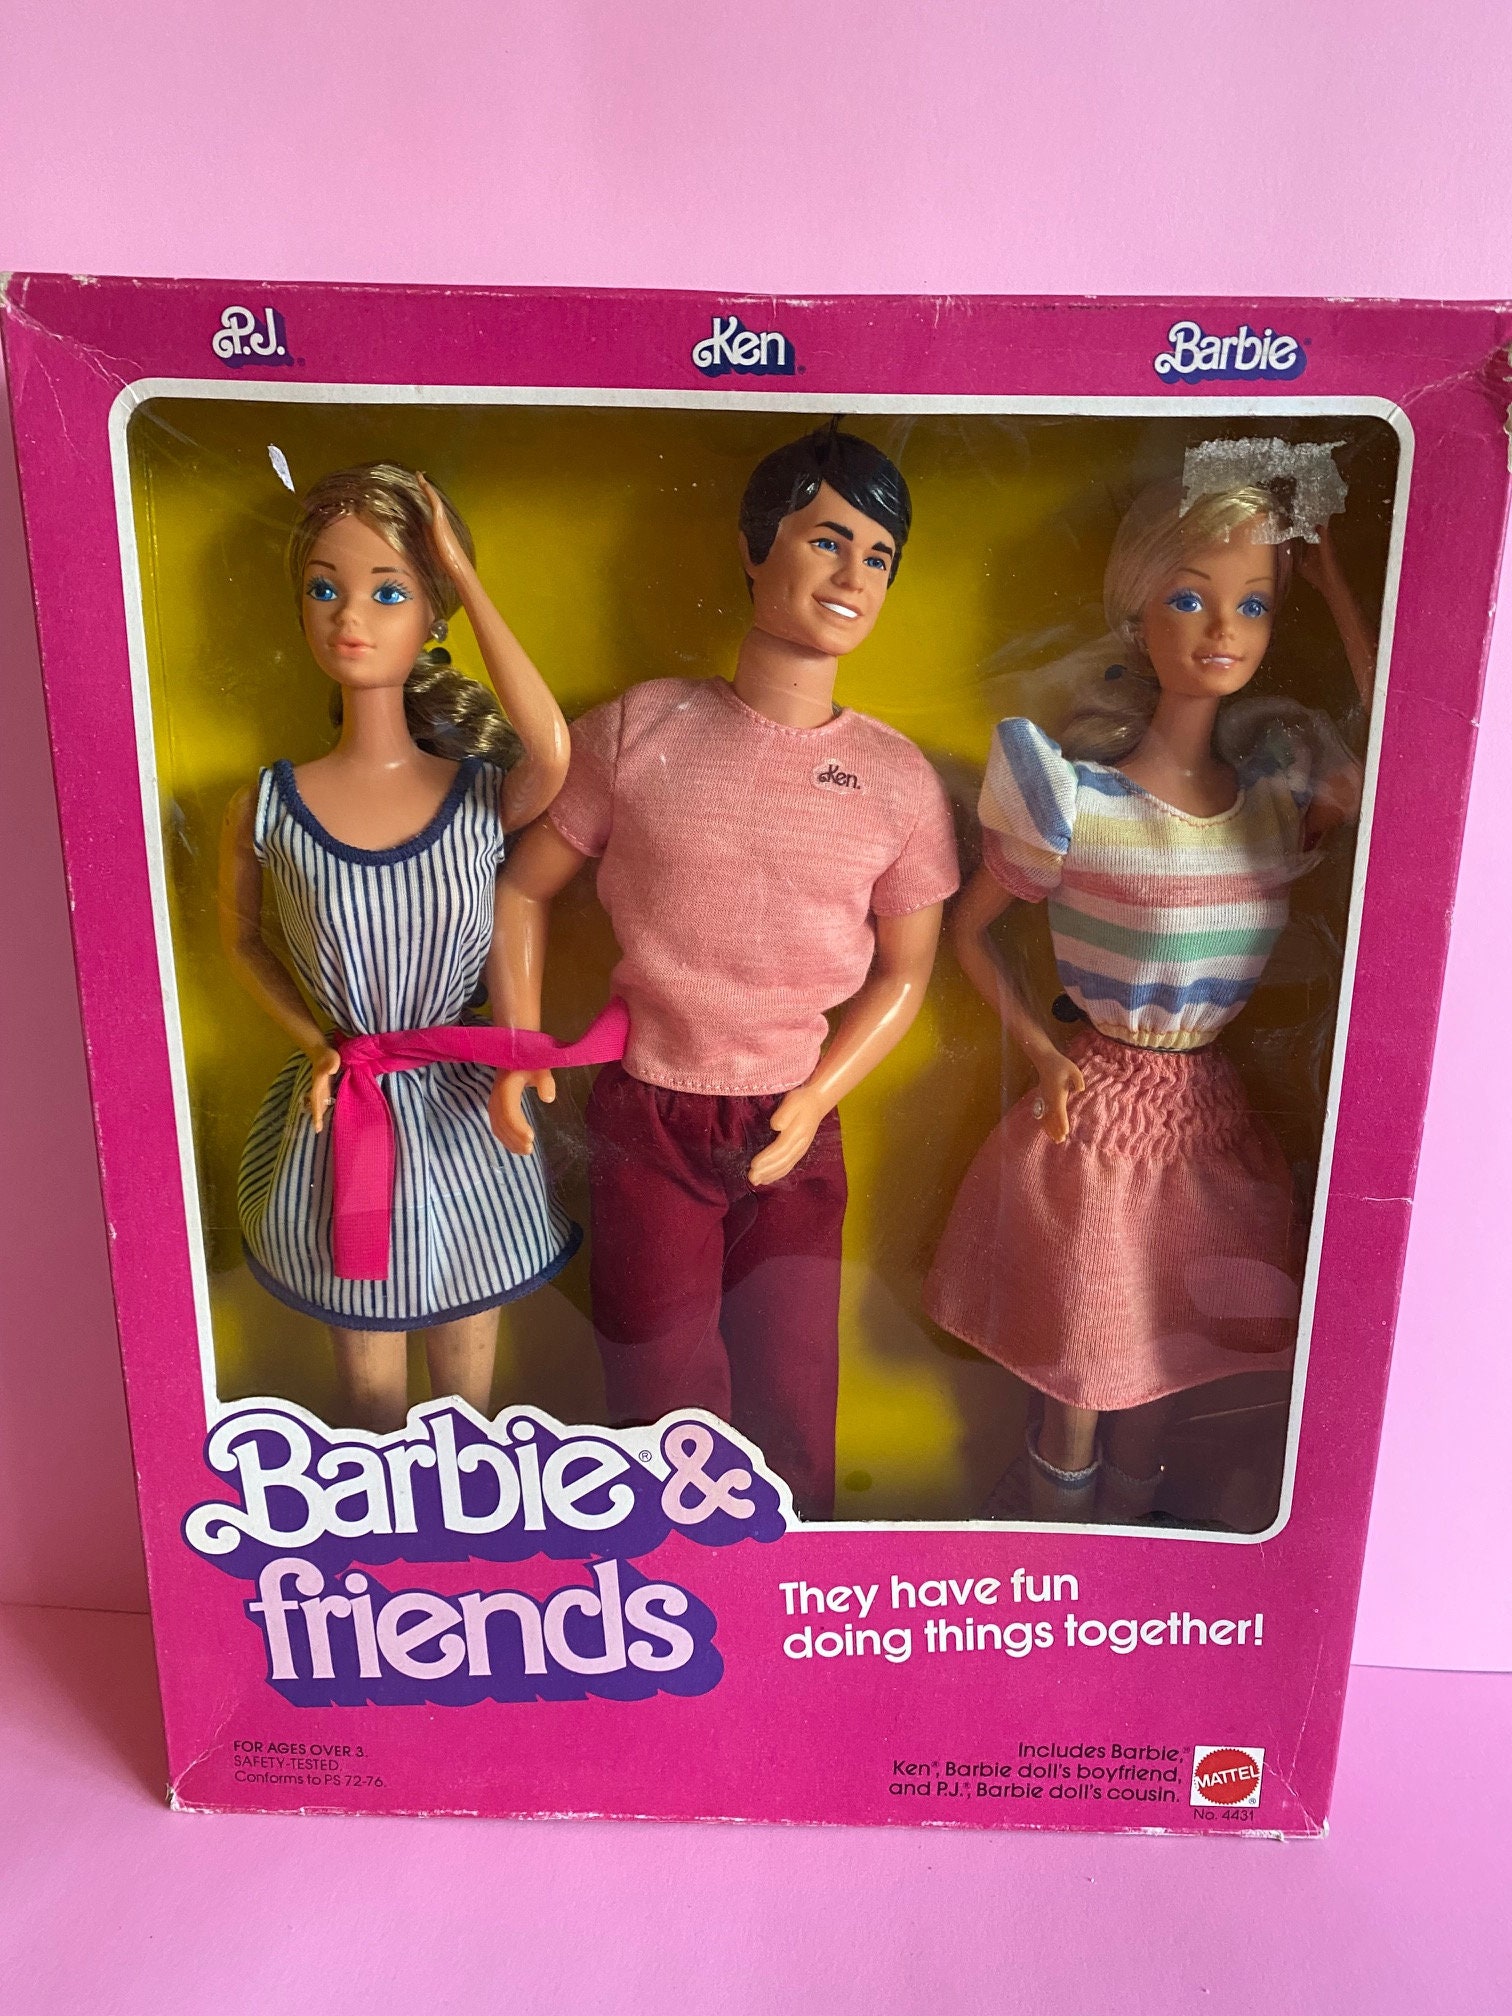 Estampa Barbie Friends adulto (por encomenda)